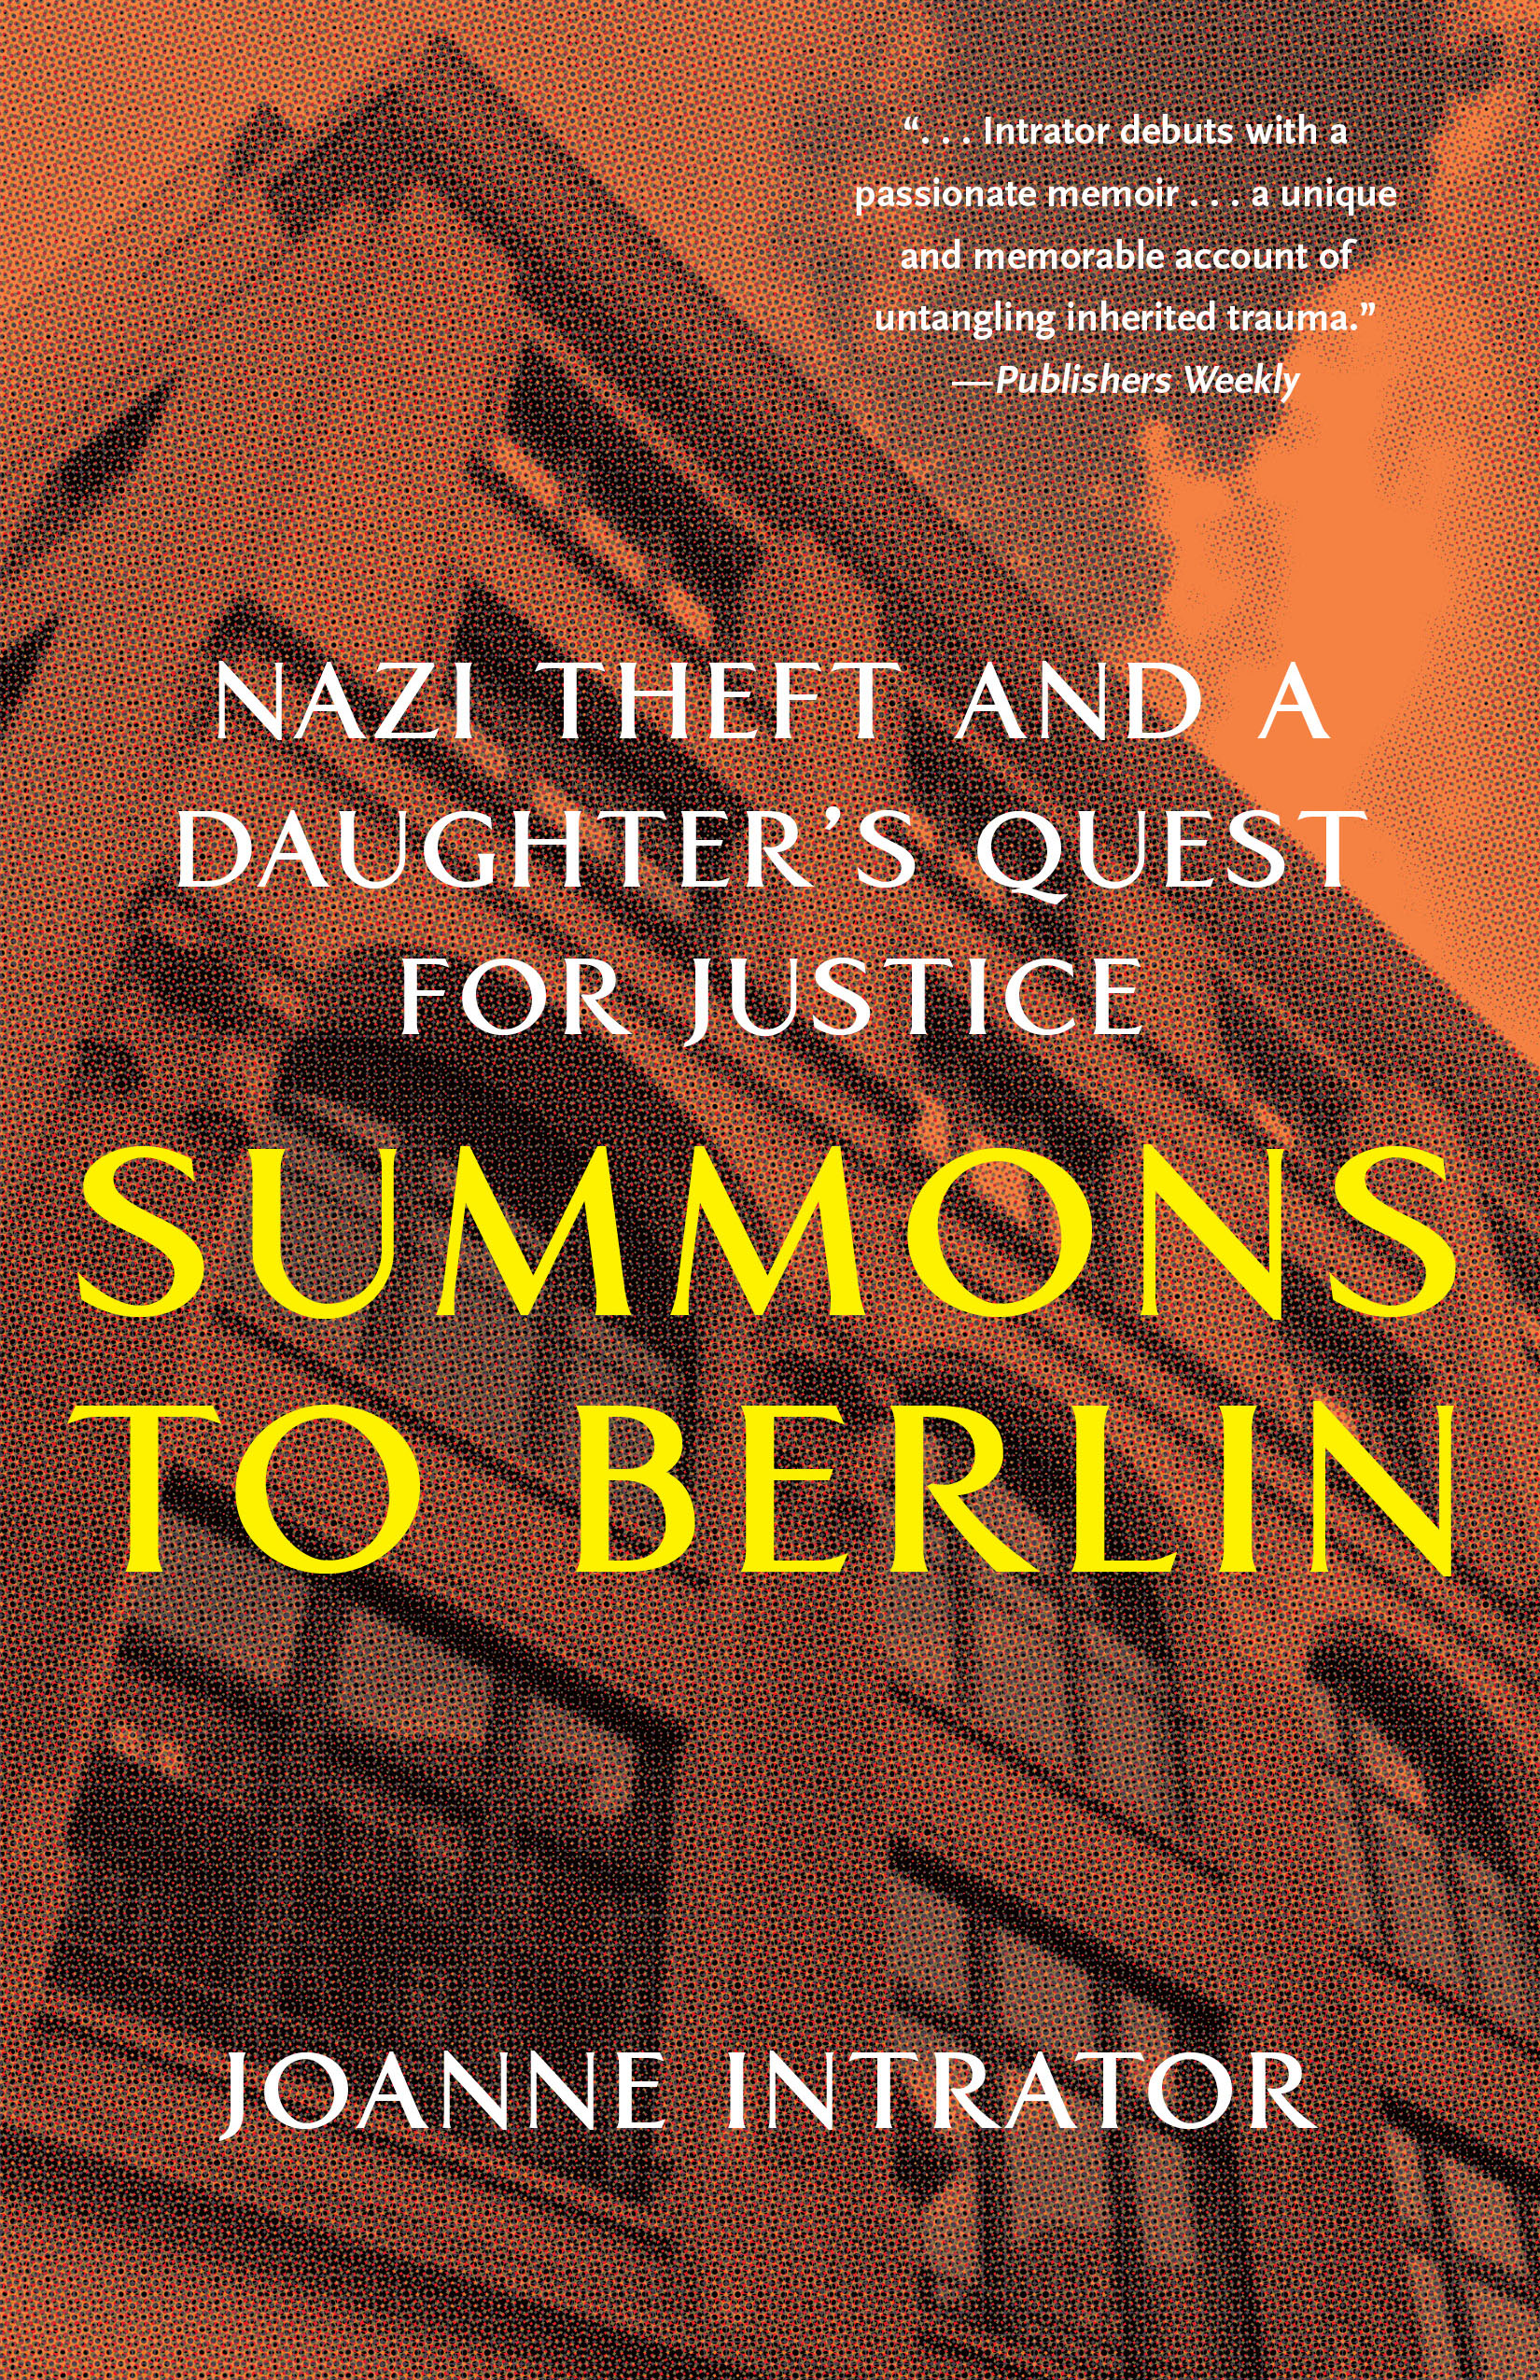 Summons to Berlin by  Joanne Intrator